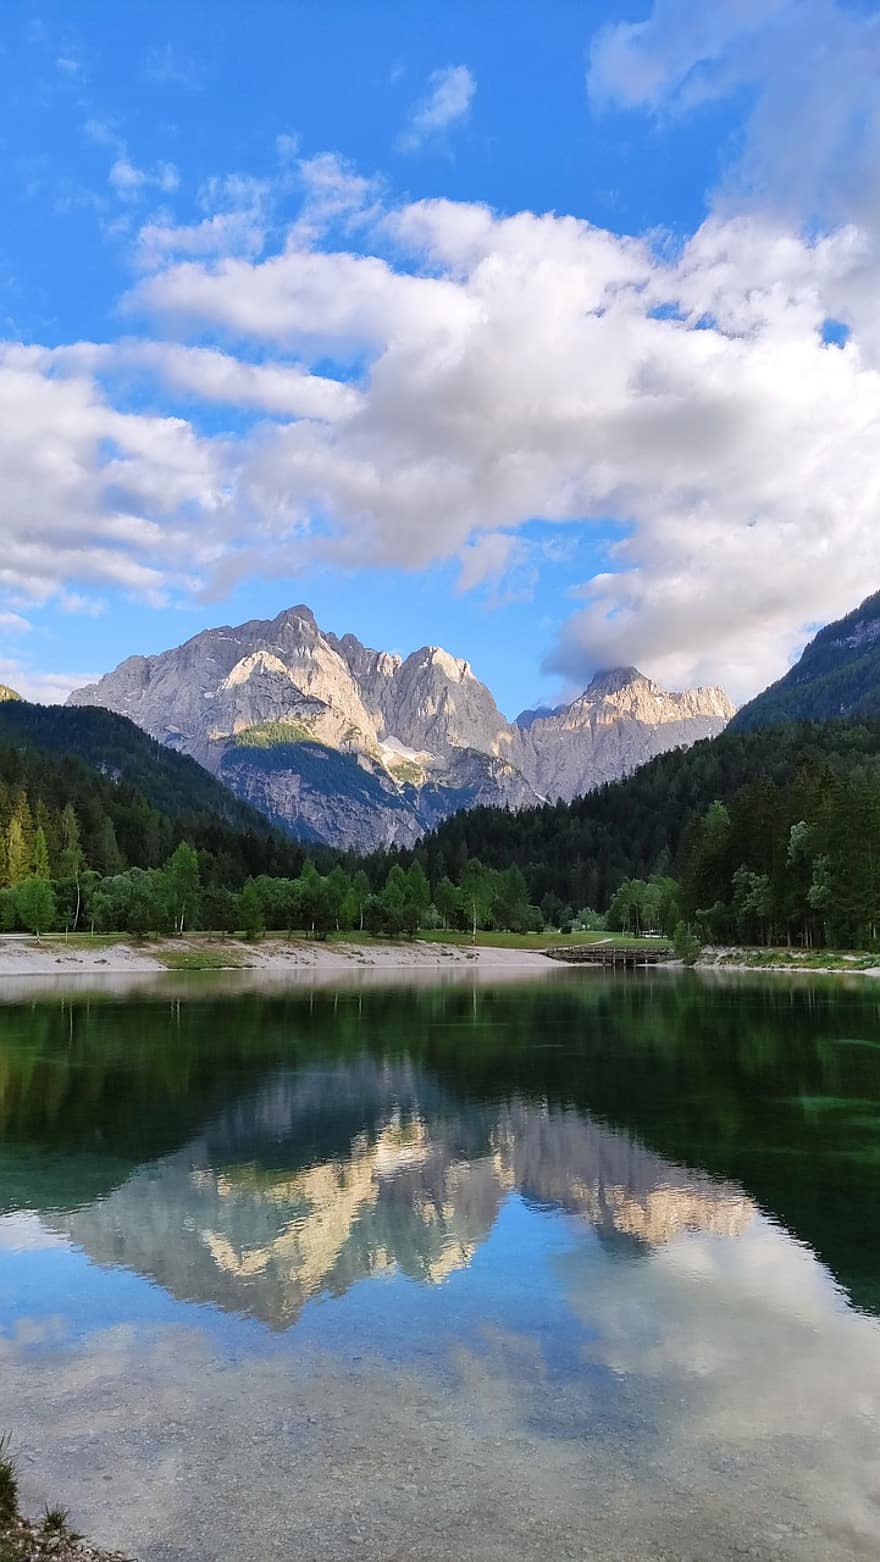 λίμνη, βουνό, τοπίο, φύση, νερό, ουρανός, αλπικός, αντανάκλαση, σε εξωτερικό χώρο, Σλοβενία